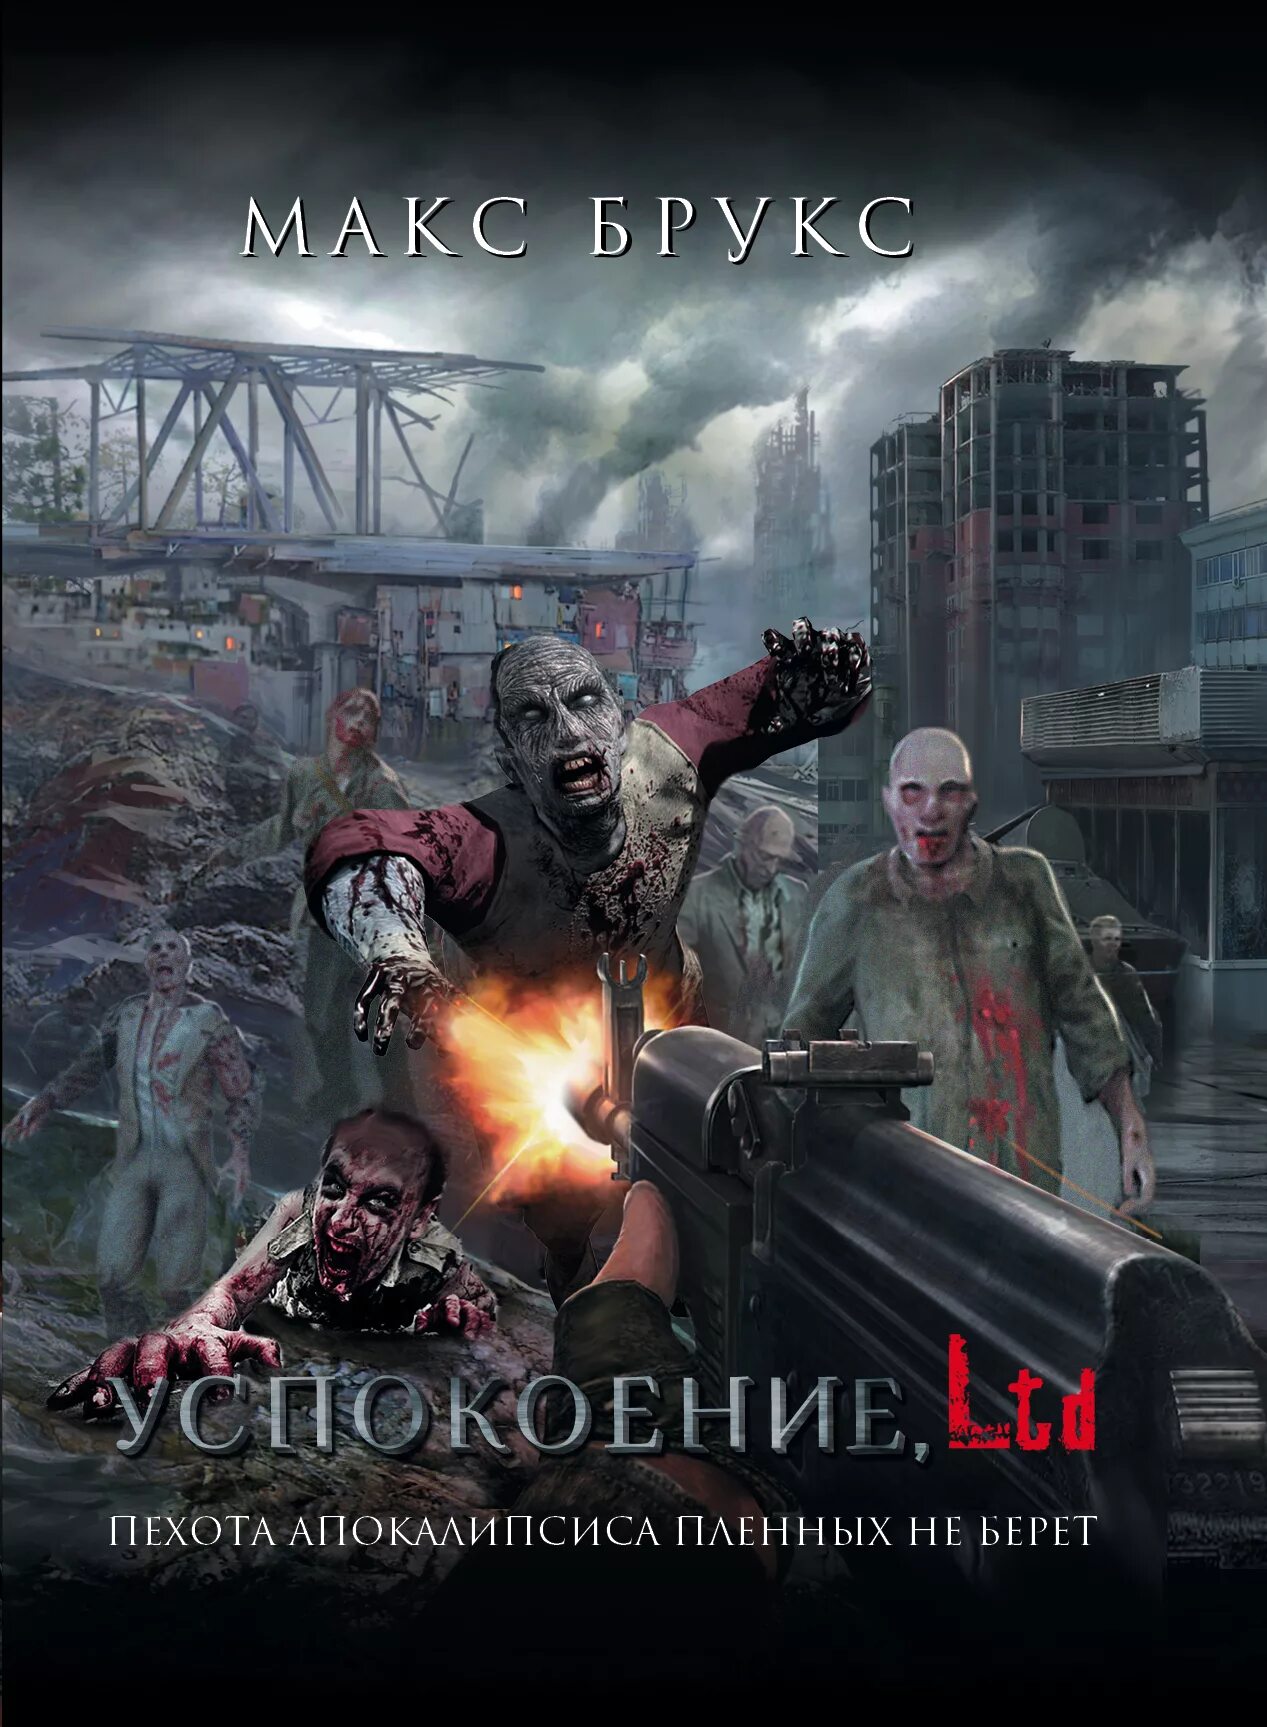 Российские книги про зомби. Брукс Макс "успокоение, Ltd". Книги про зомби. Апокалипсис книга.